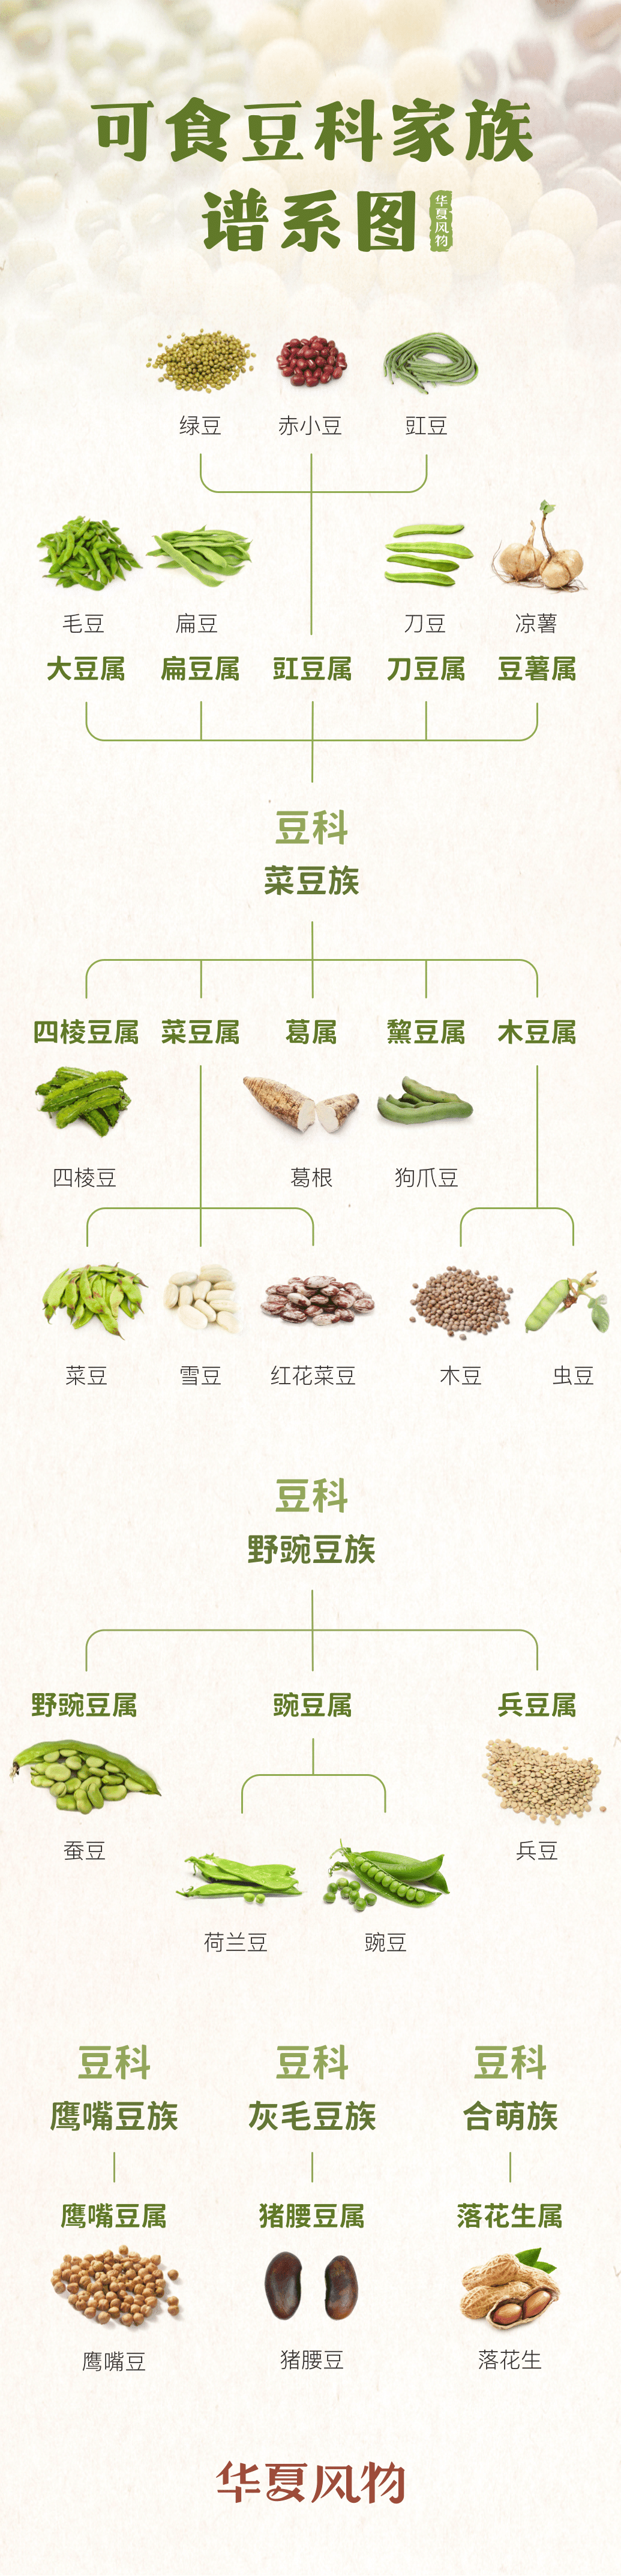 中国可食豆类家族一览 ©华夏风物